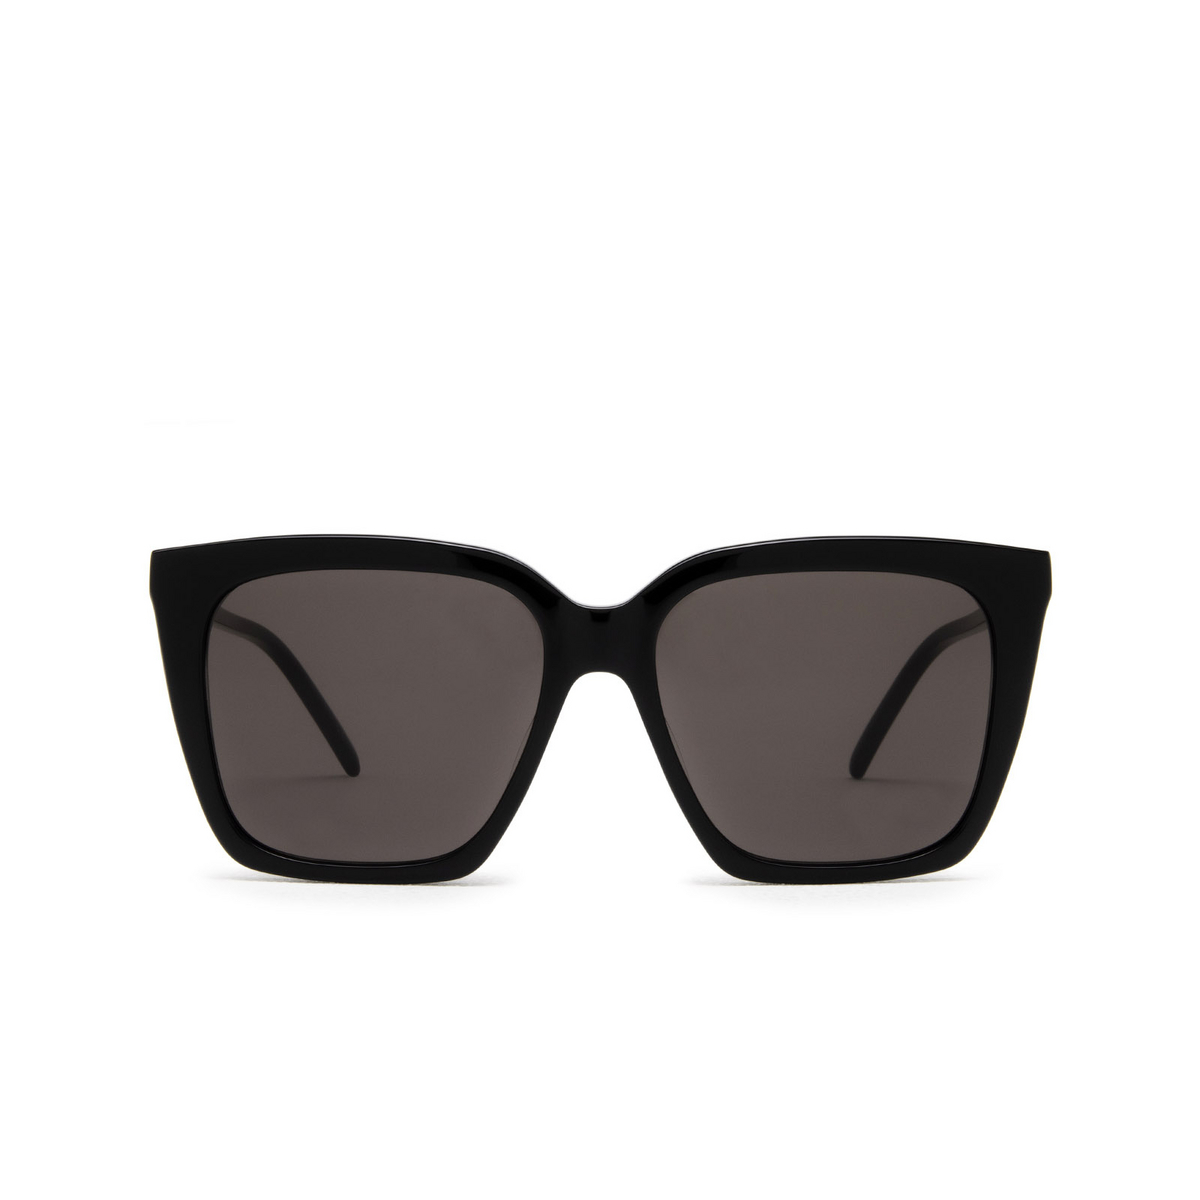 Saint Laurent® Square Sunglasses: SL M100 color Black 001 - front view.